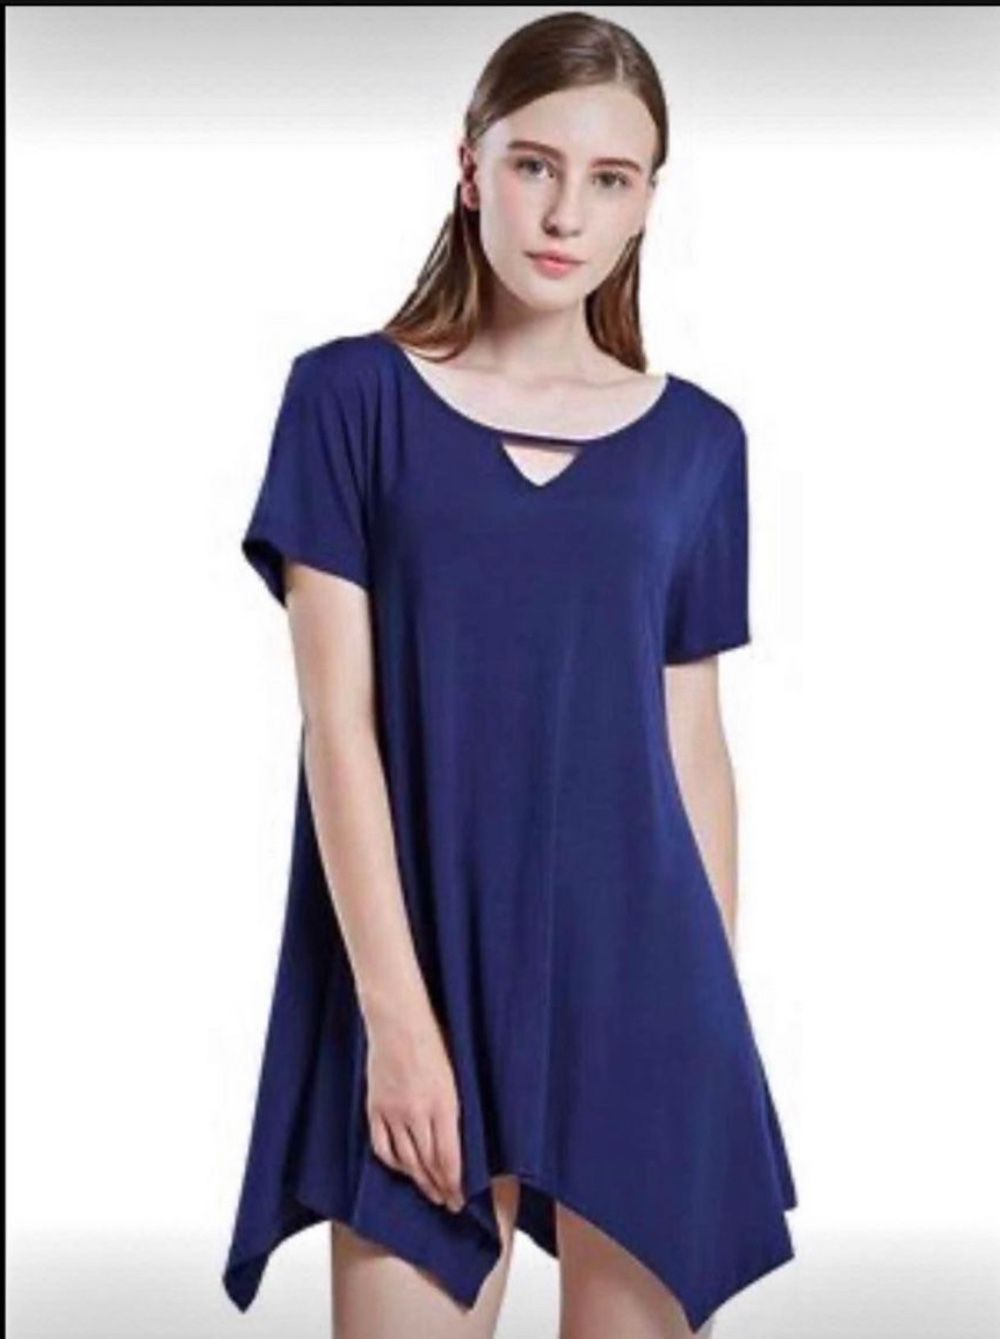 Brandnew Sleepwear Women's Nightshirts Scoop Neck Sleep Shirt Size(XL,2XL)